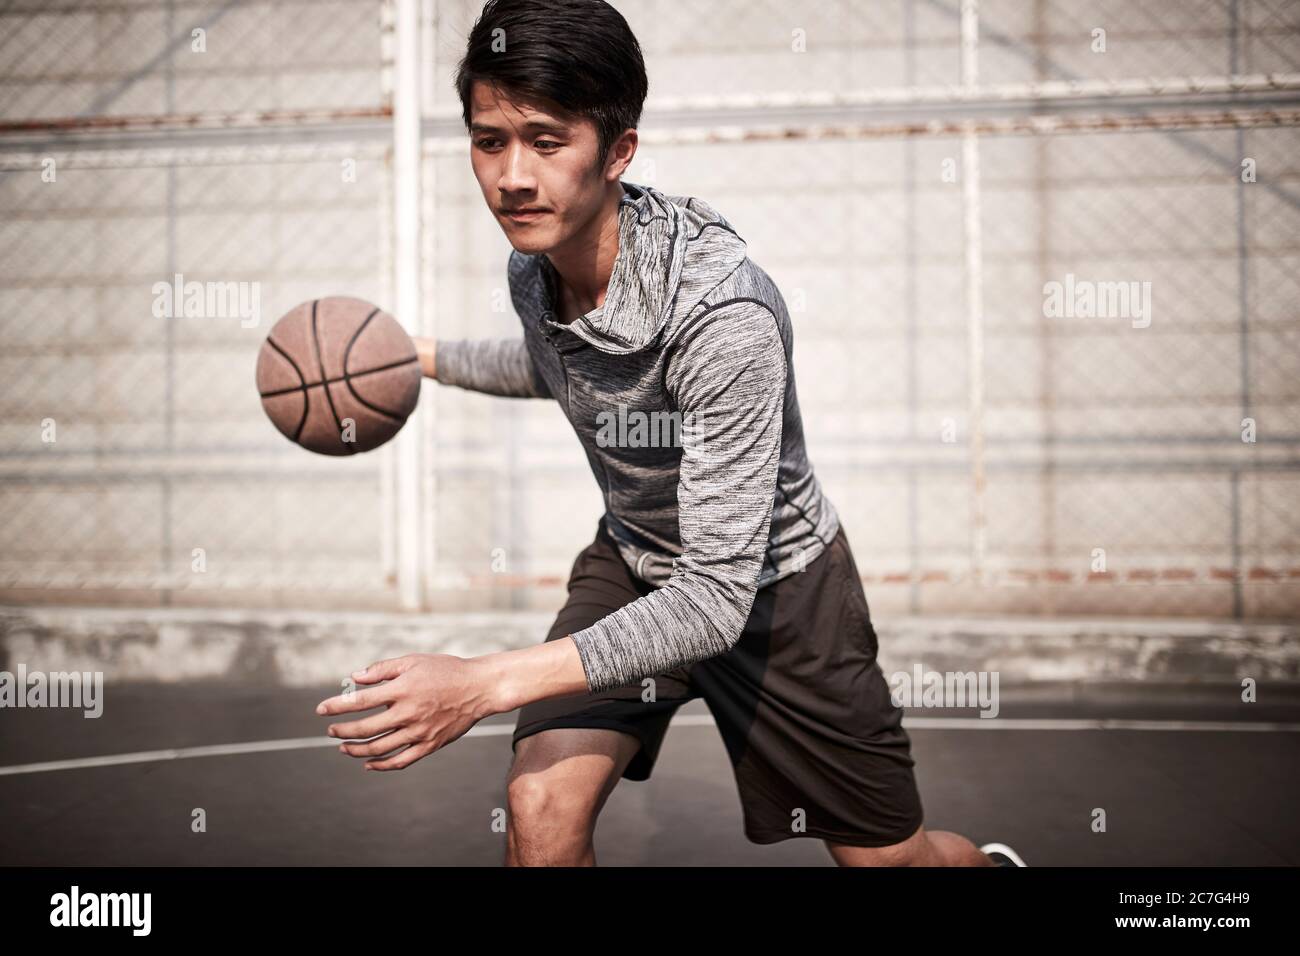 Junge asiatische männliche Basketballspieler üben Ball Handling Fähigkeiten auf Outdoor-Court Stockfoto